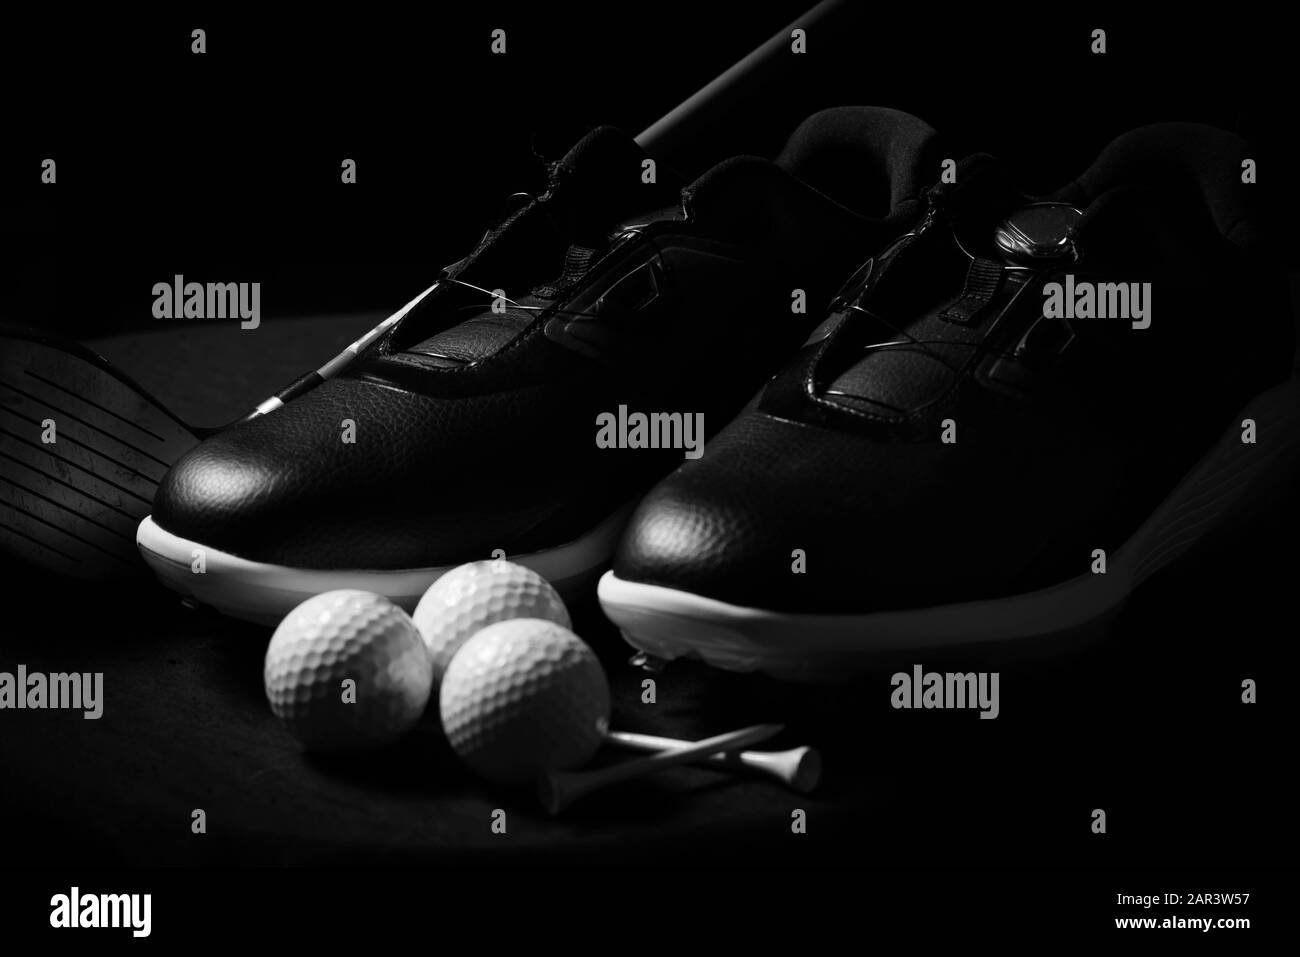 Golfschuhe, Bälle, T-Shirts und Golfclub isoliert auf schwarzem Hintergrund. Stockfoto